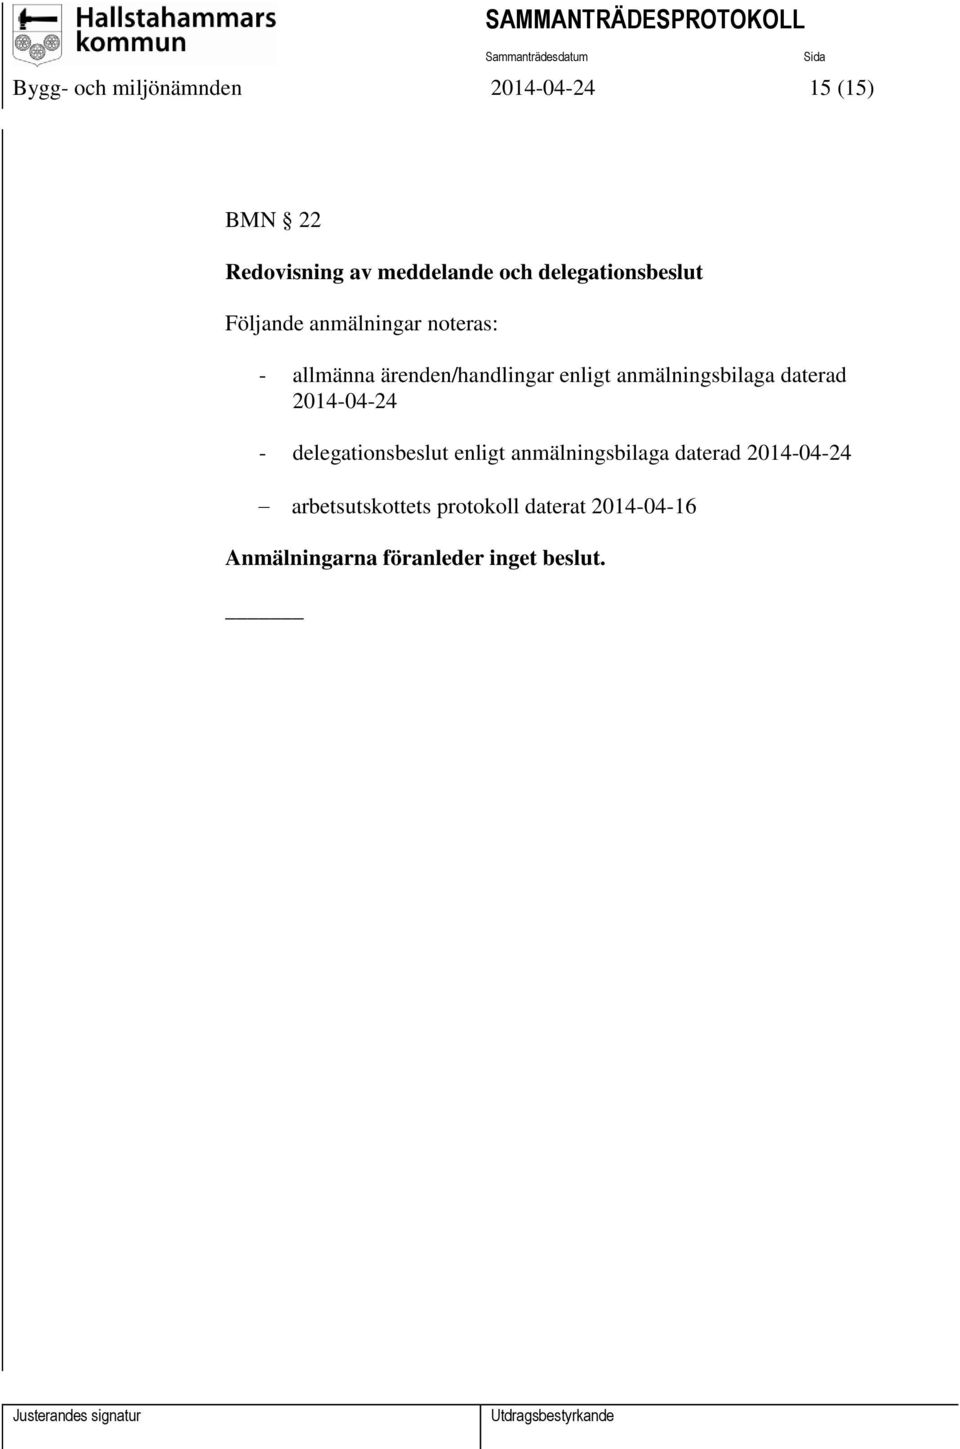 anmälningsbilaga daterad 2014-04-24 - delegationsbeslut enligt anmälningsbilaga